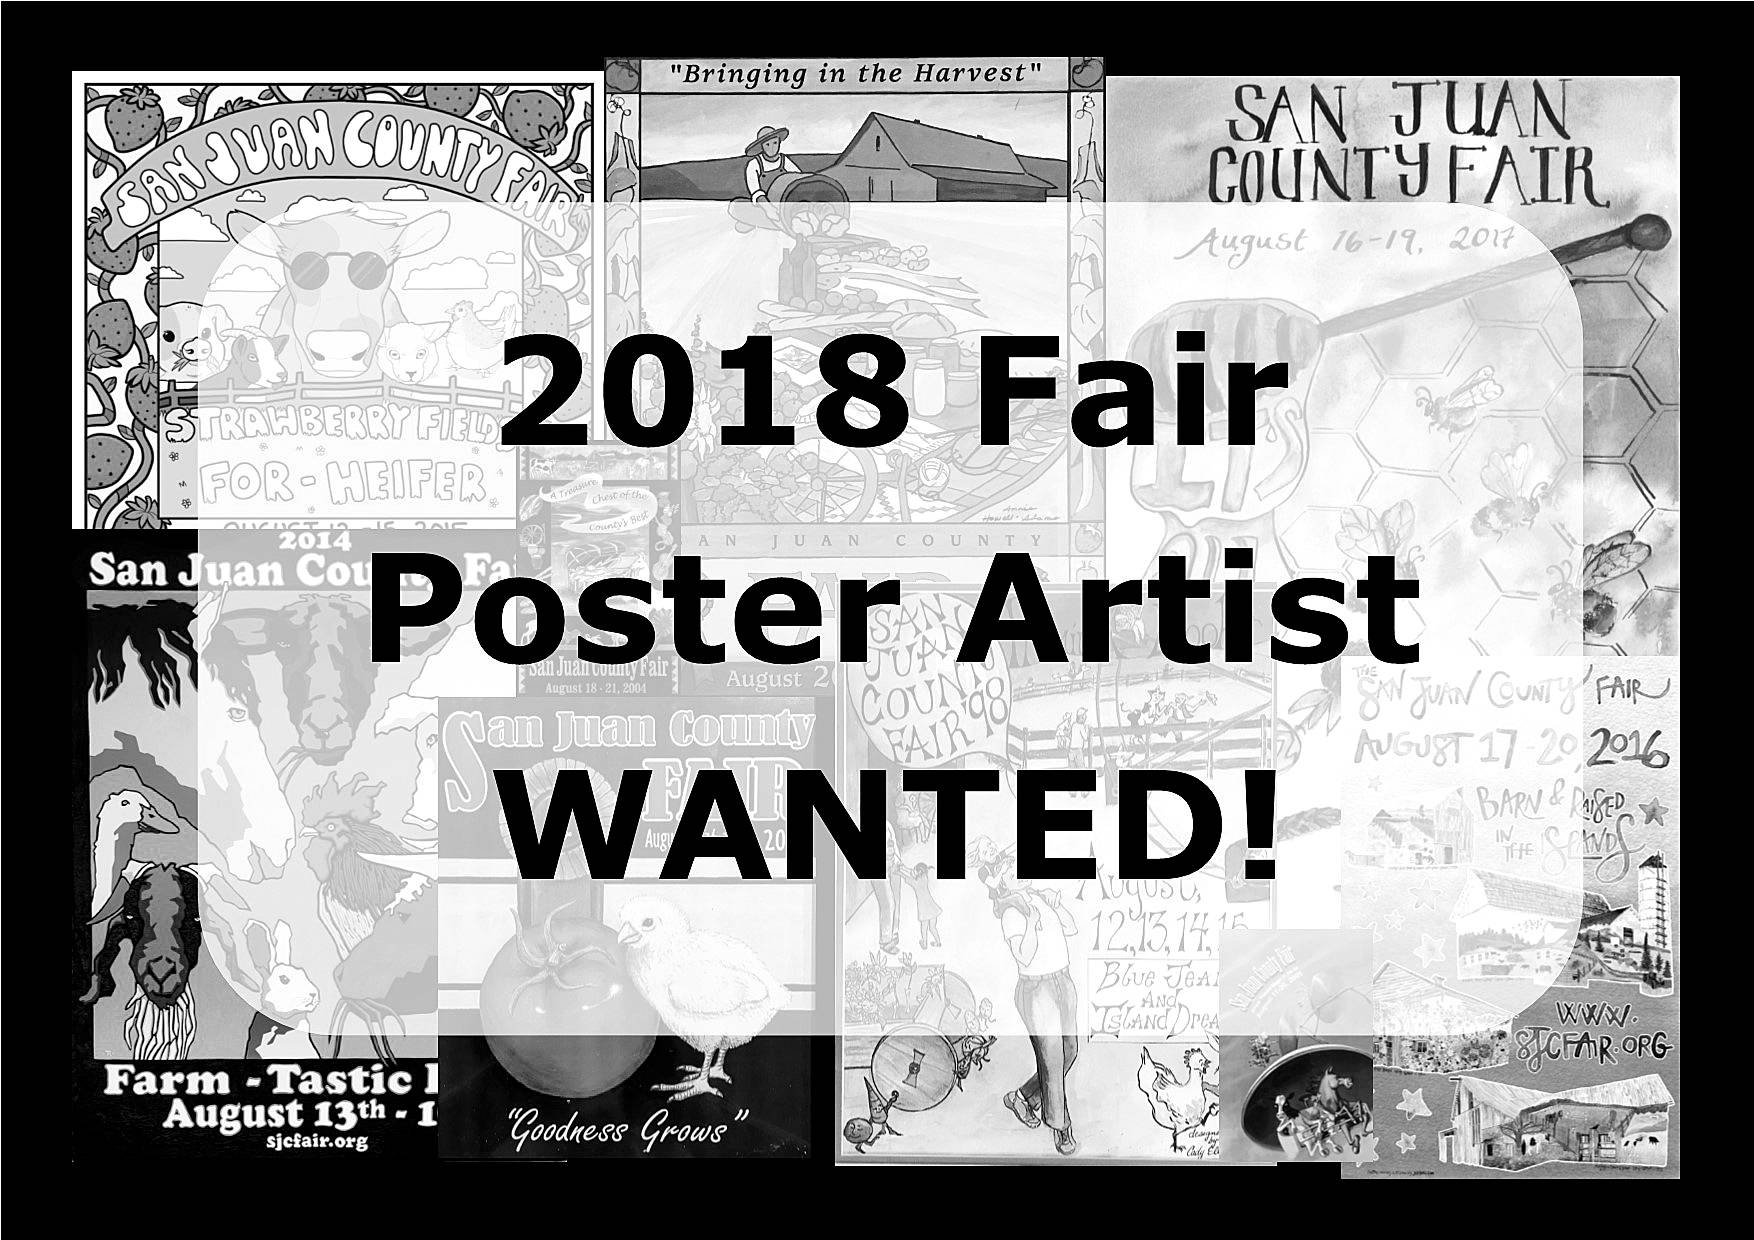 2018 San Juan County Fair organizations seek poster artist